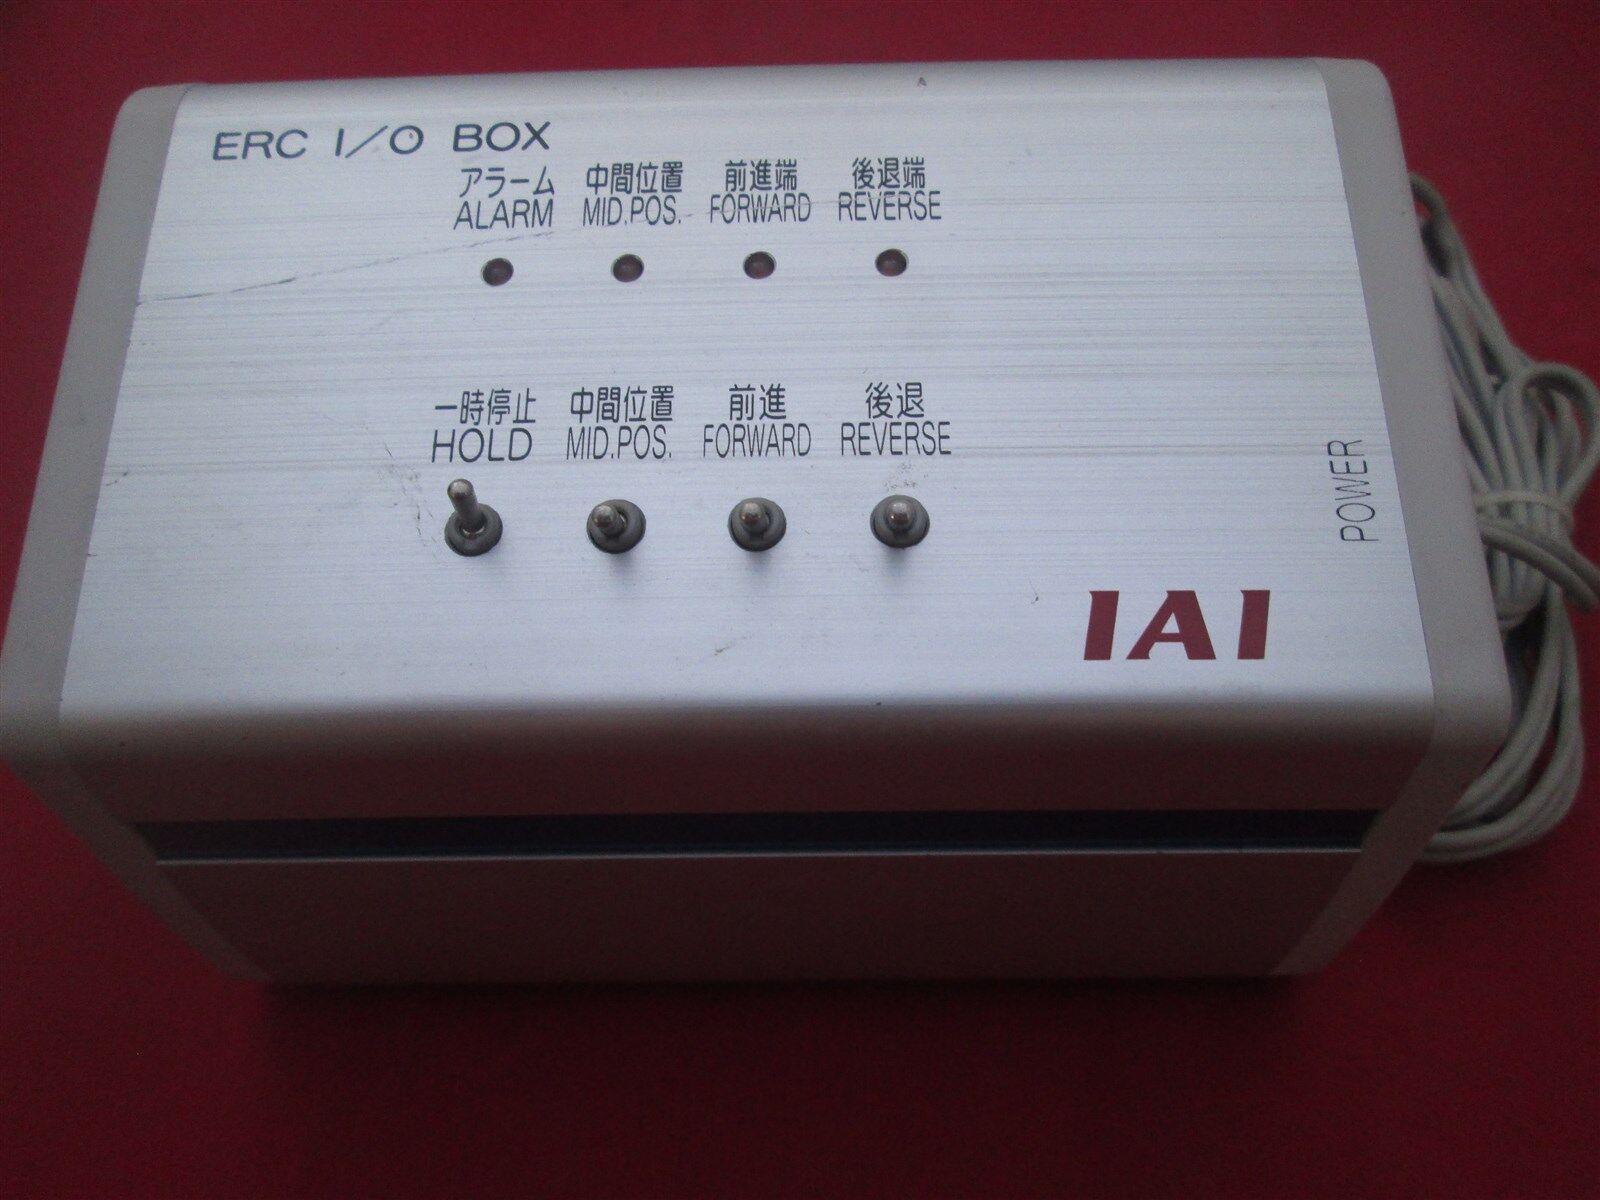 IAI ERC I/O Box SC80N